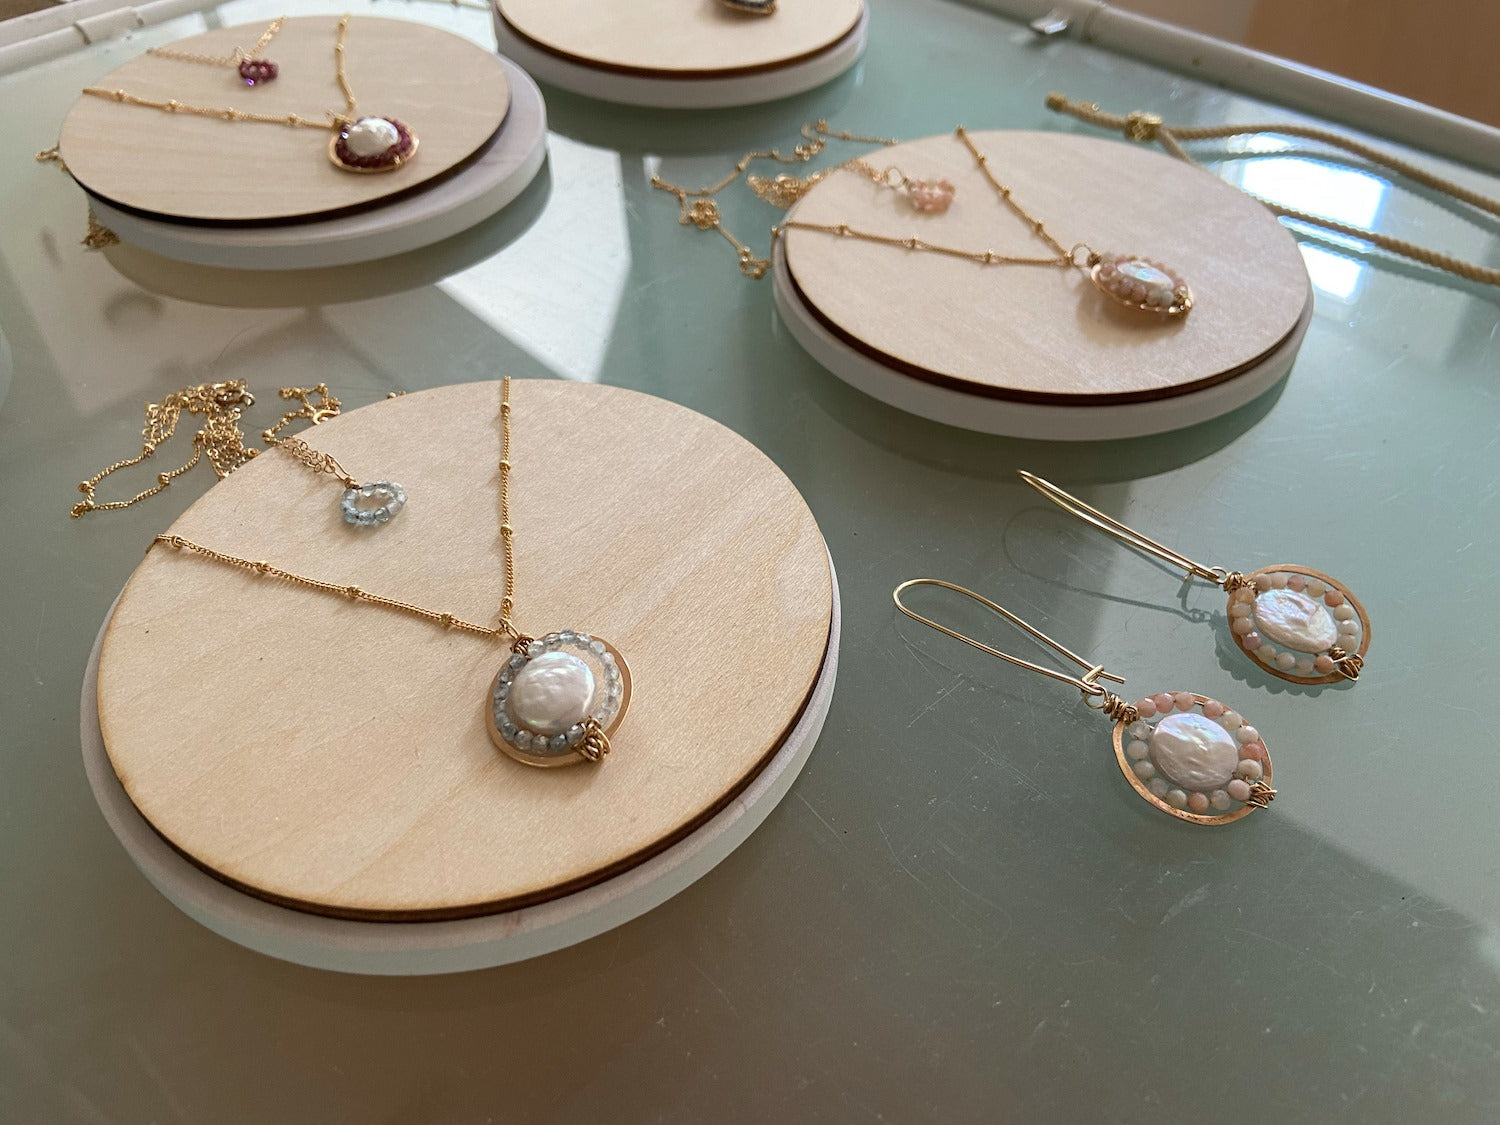 Gemstone Medallion Earrings - Sapphire Robyn Canady 